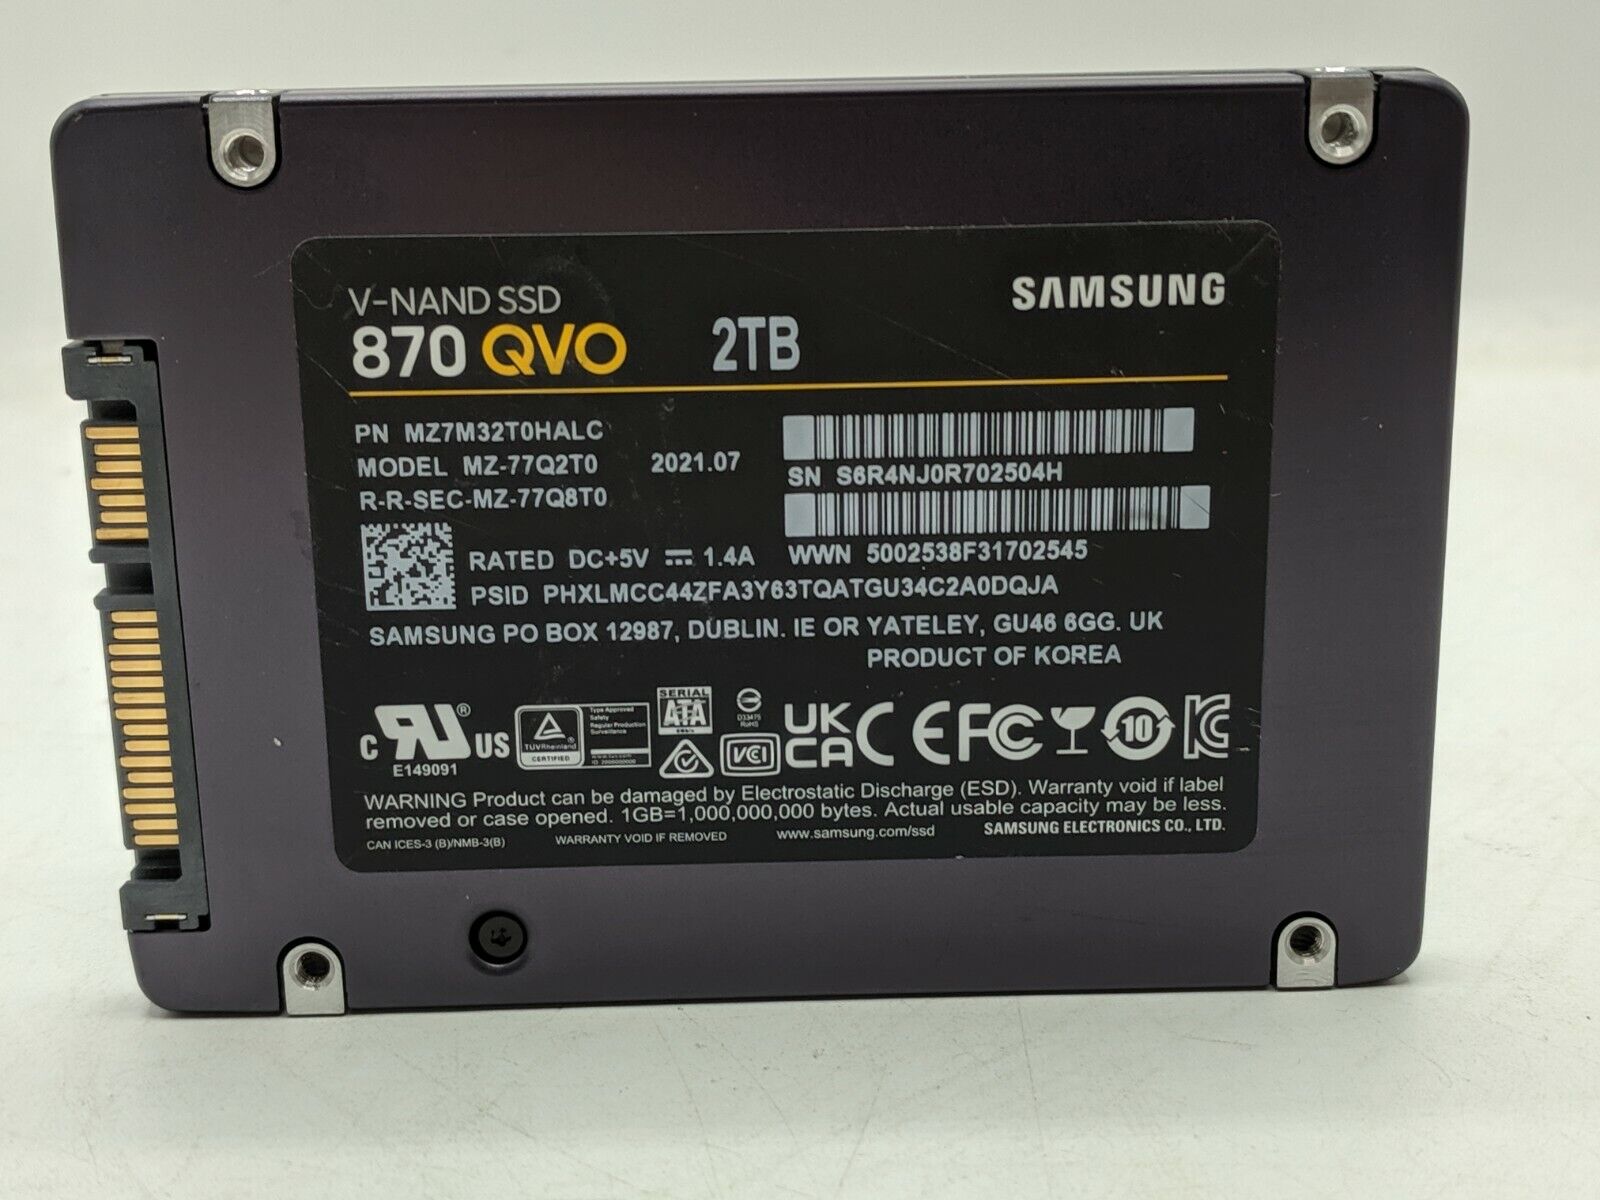 SAMSUNG 870 QVO 2TB V-NAND SSD SATA 2.5